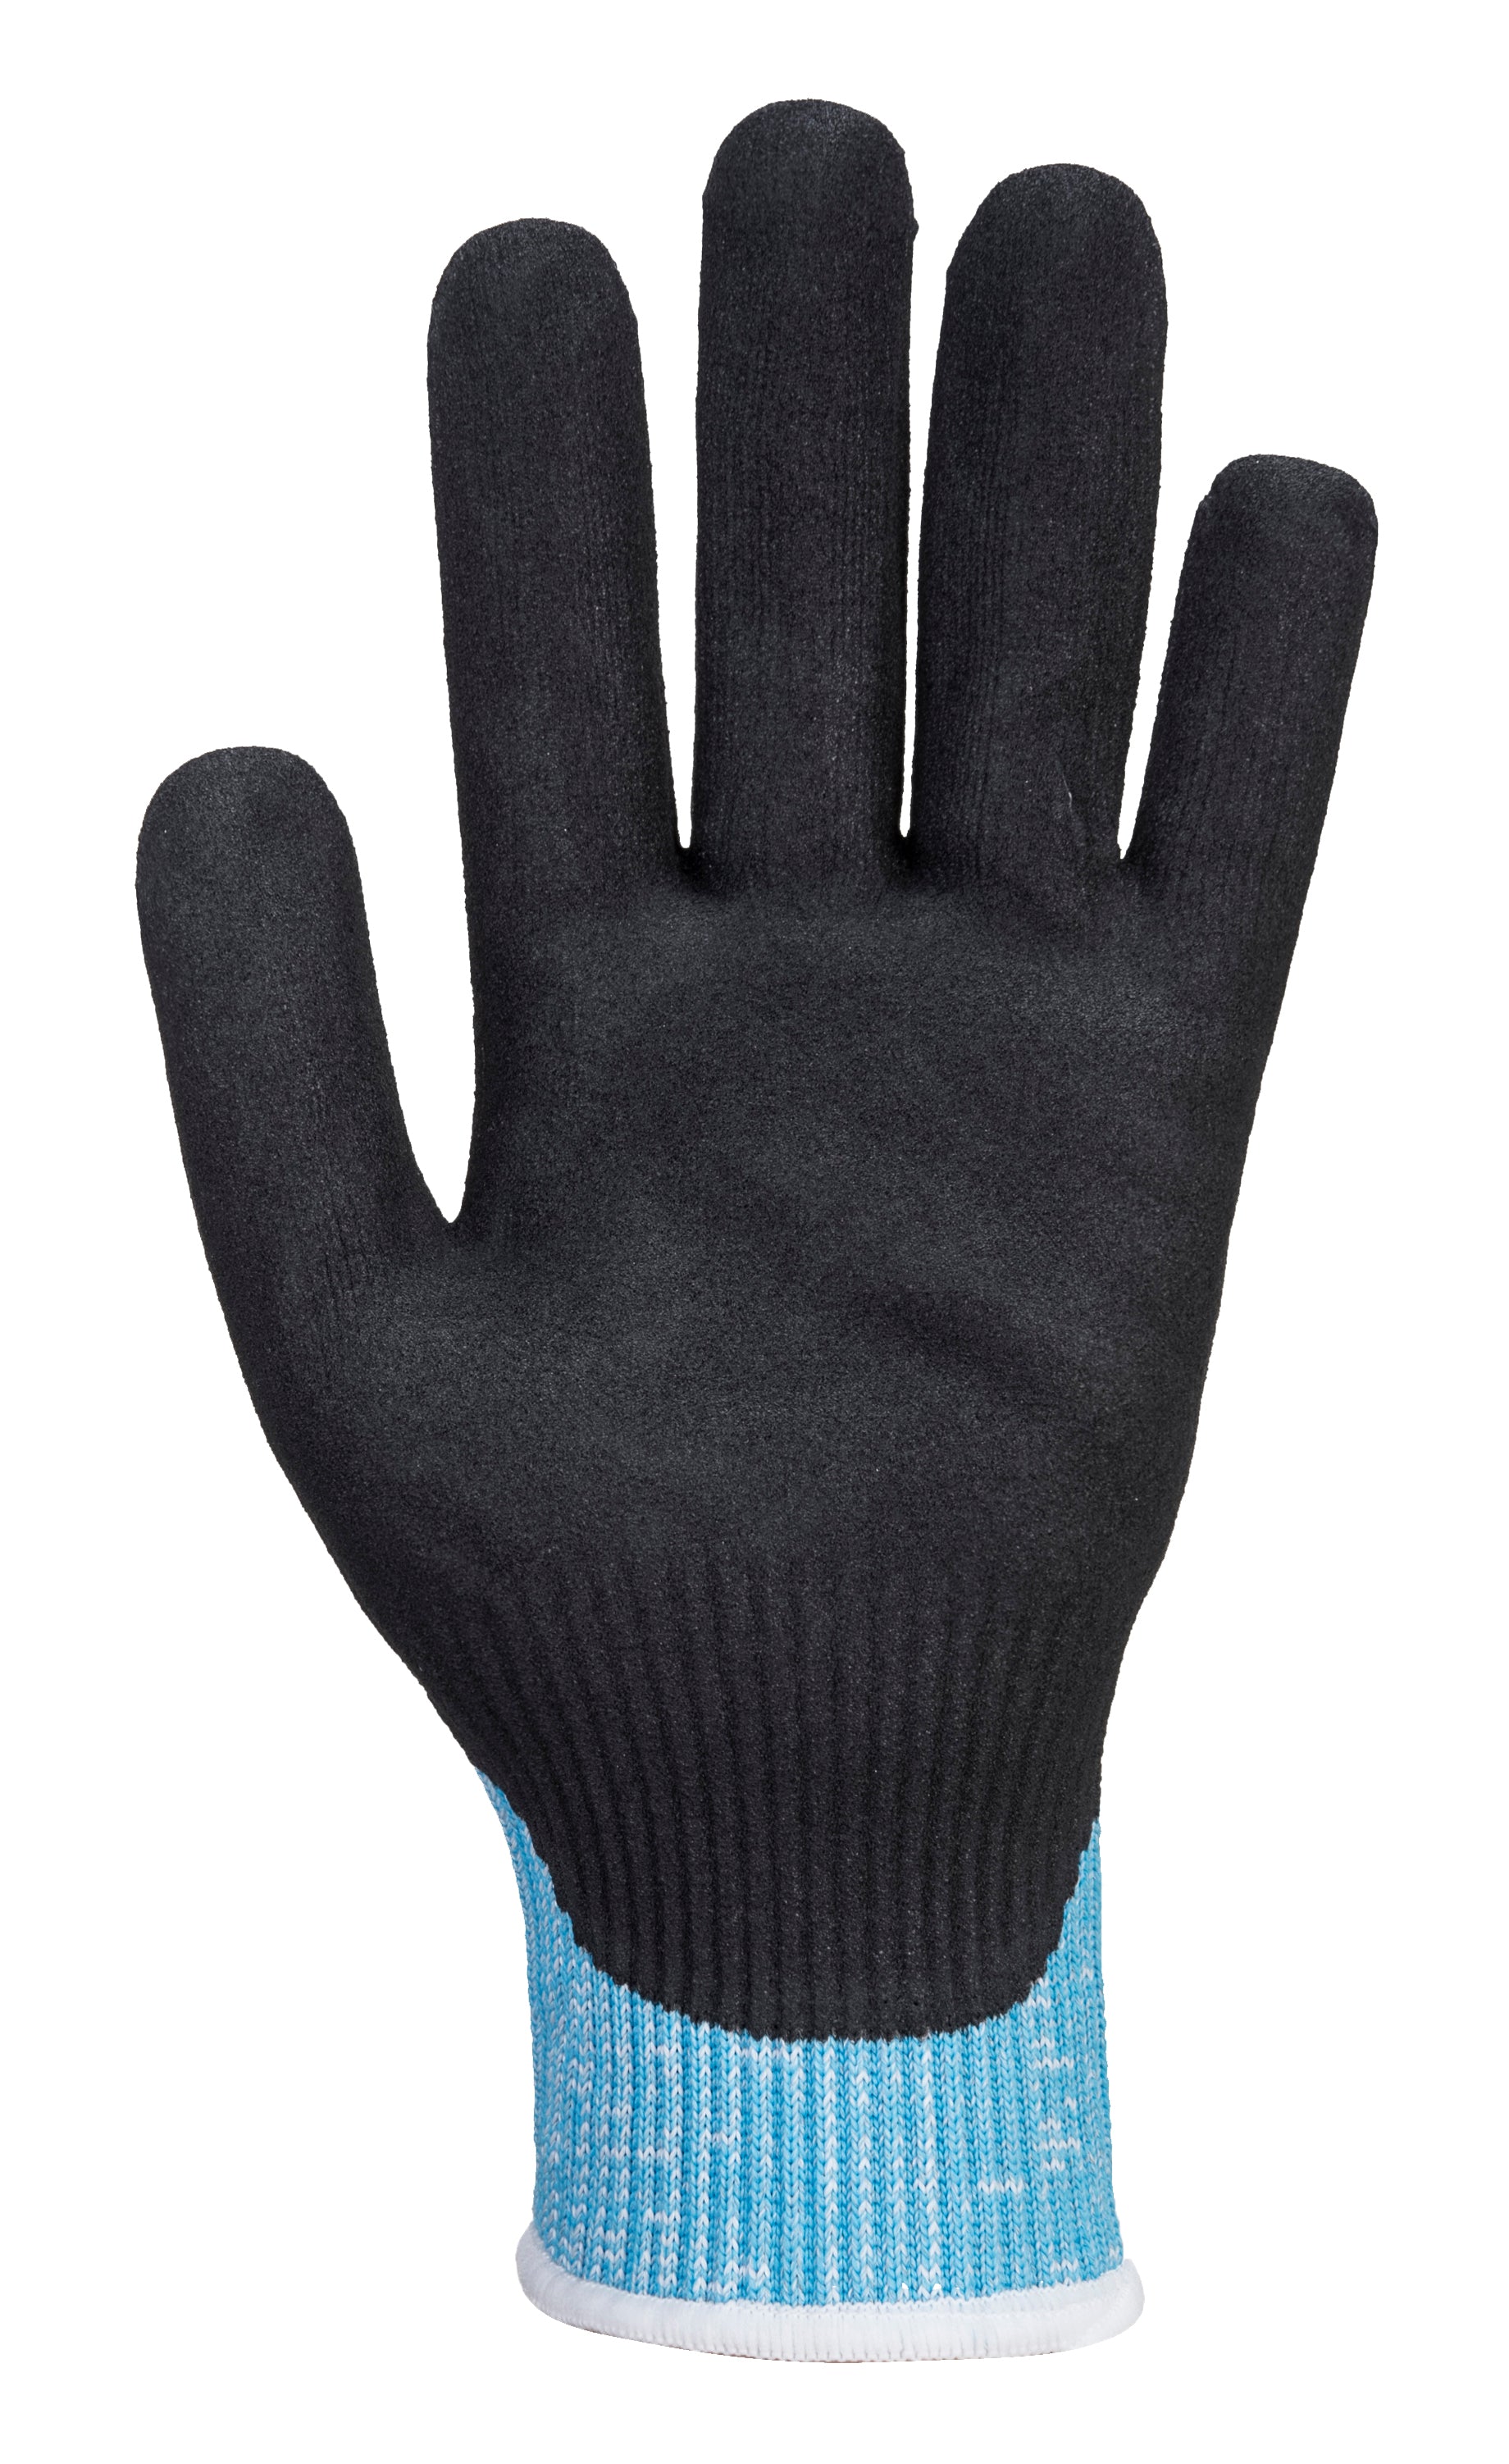 Claymore AHR Cut Glove Blue/Black - A667 Palm 